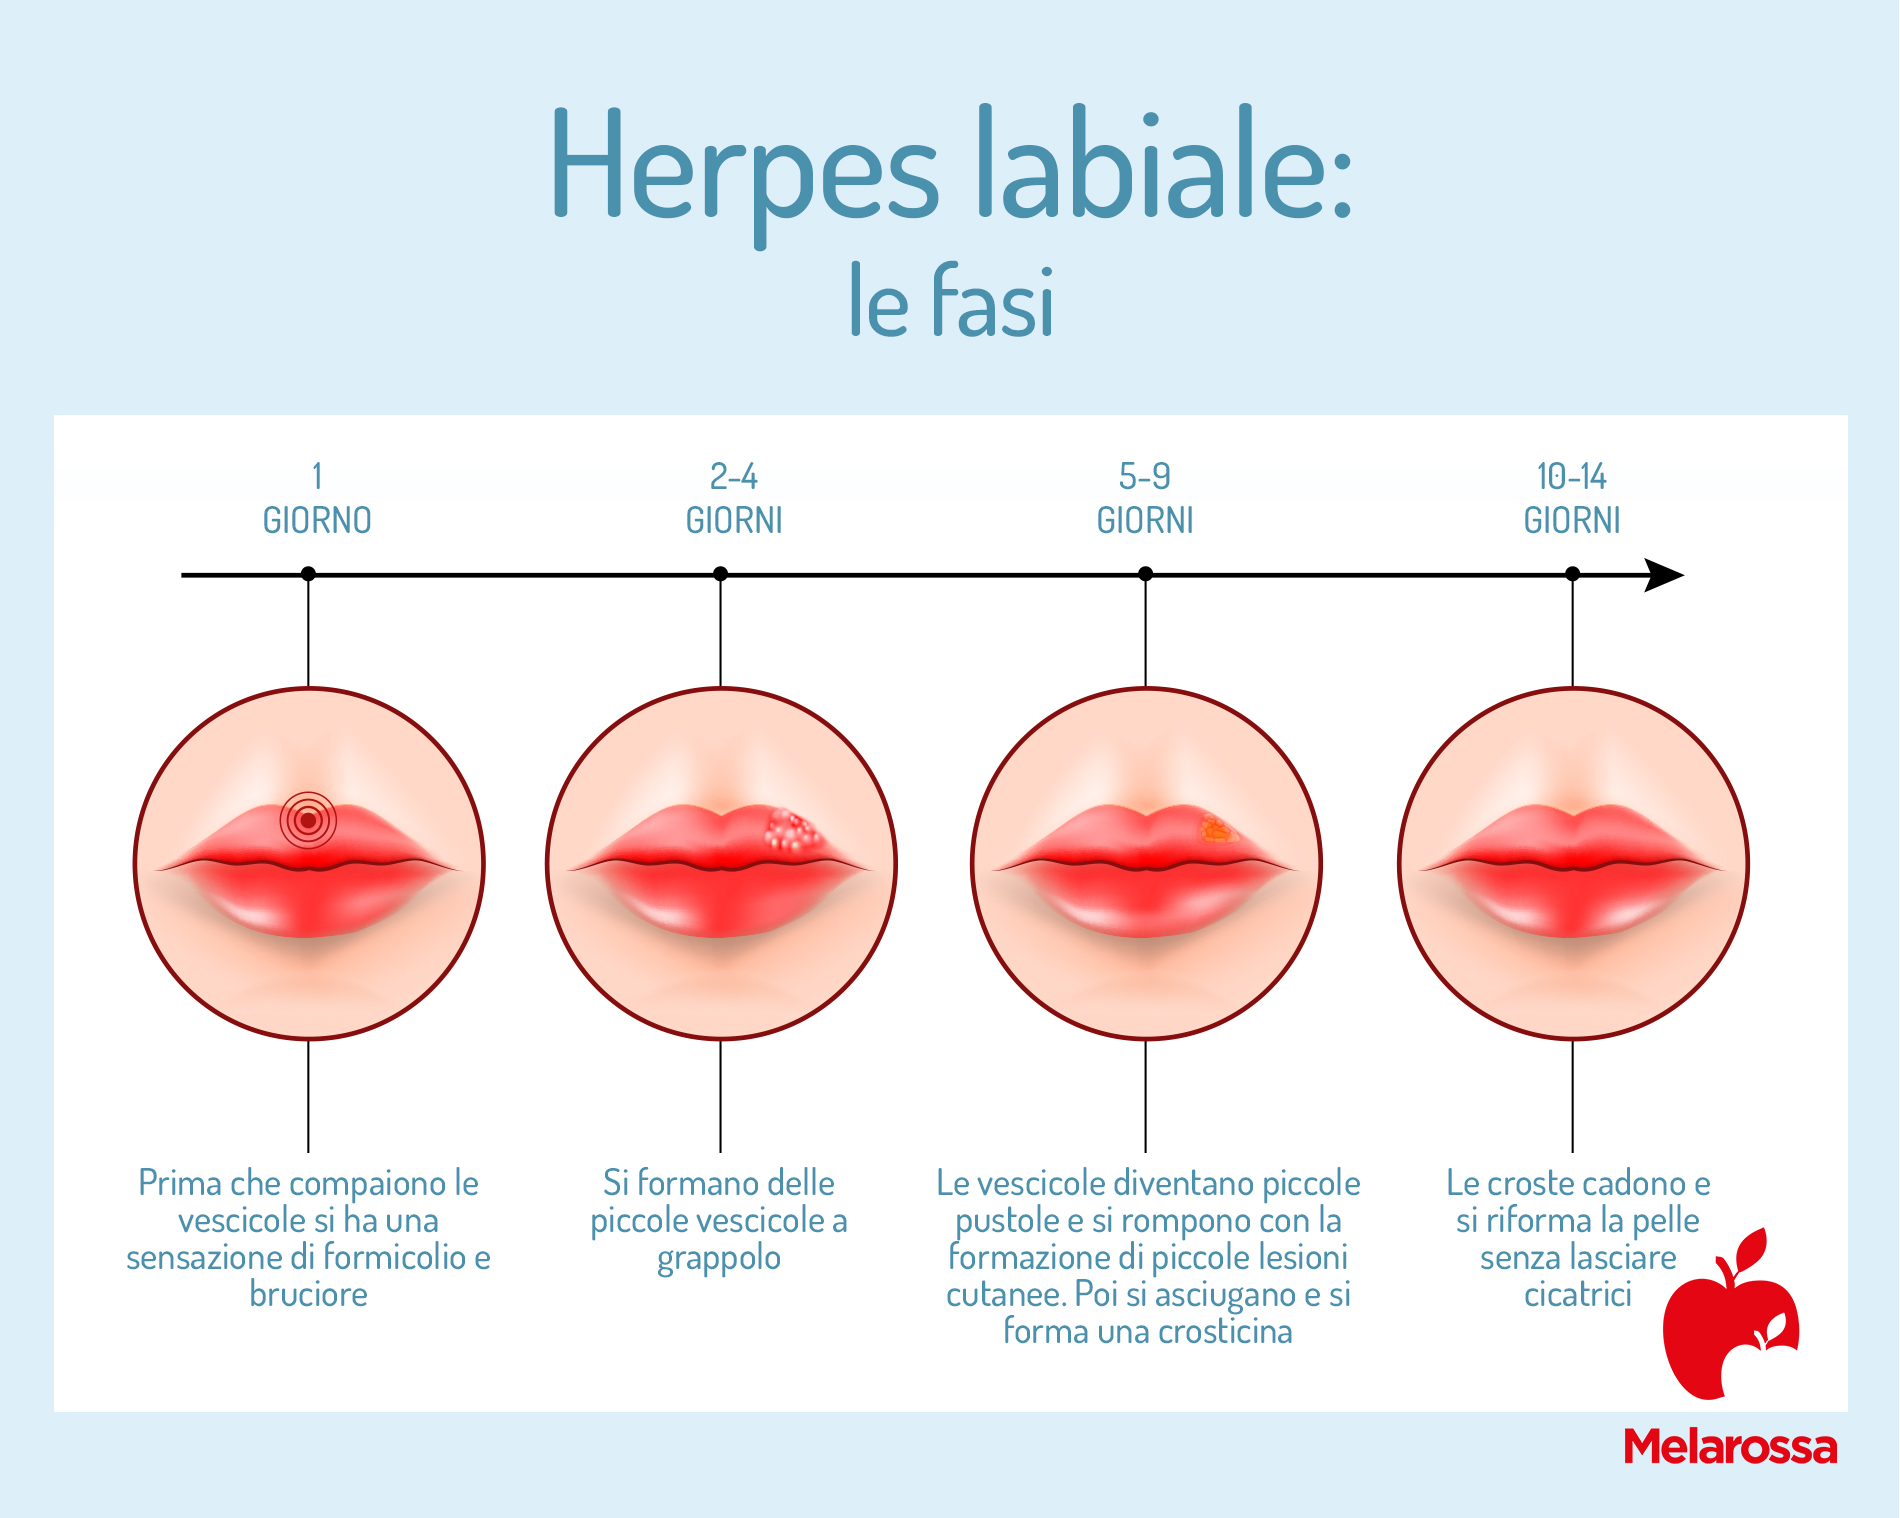 Le fasi dell'herpes labiale